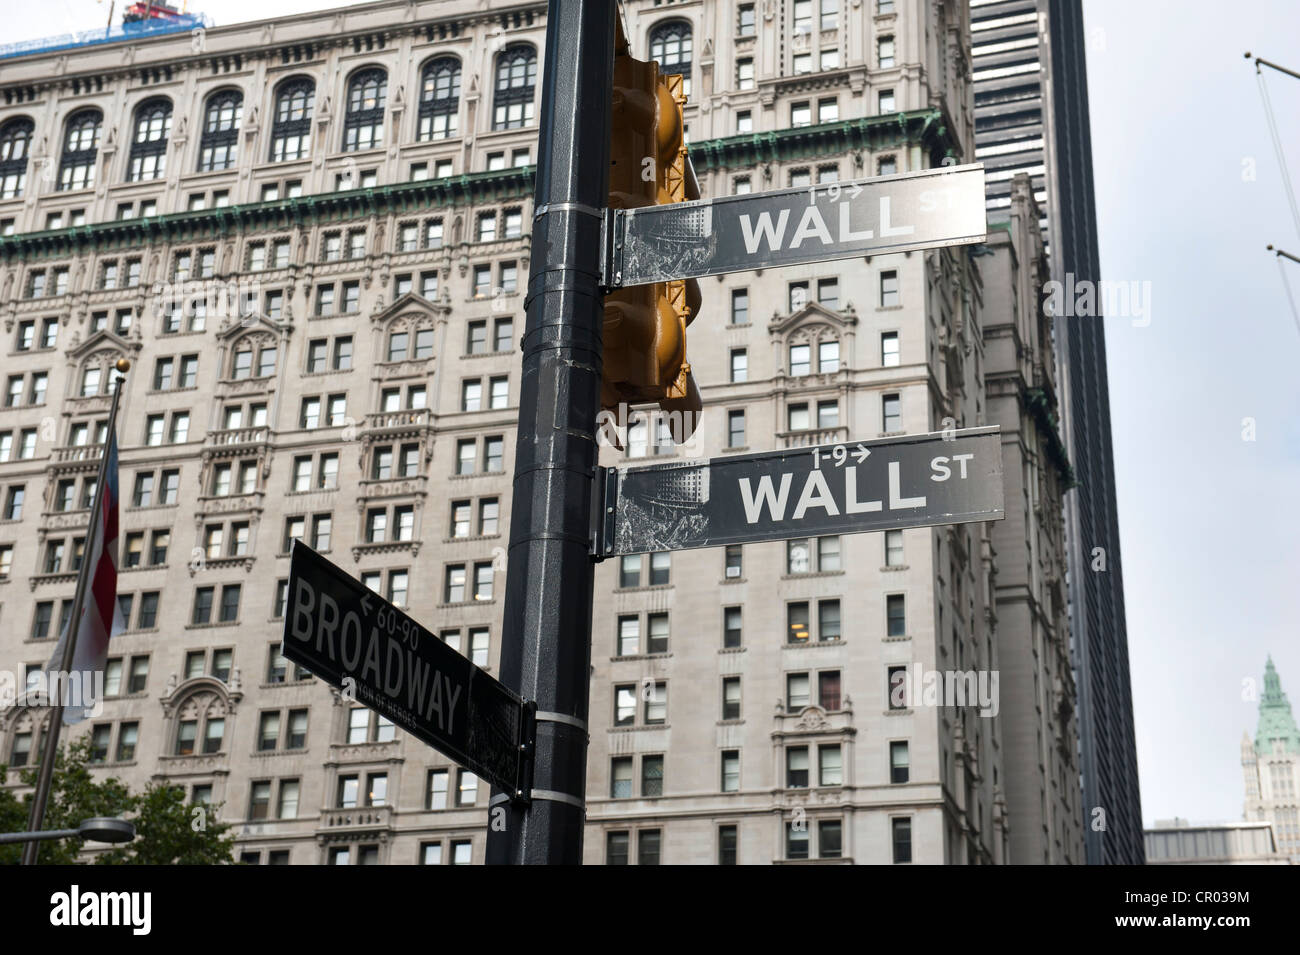 Straßenschilder, Wall Street und Broadway, Financial District, Manhattan, New York City, USA, Nordamerika, Amerika Stockfoto